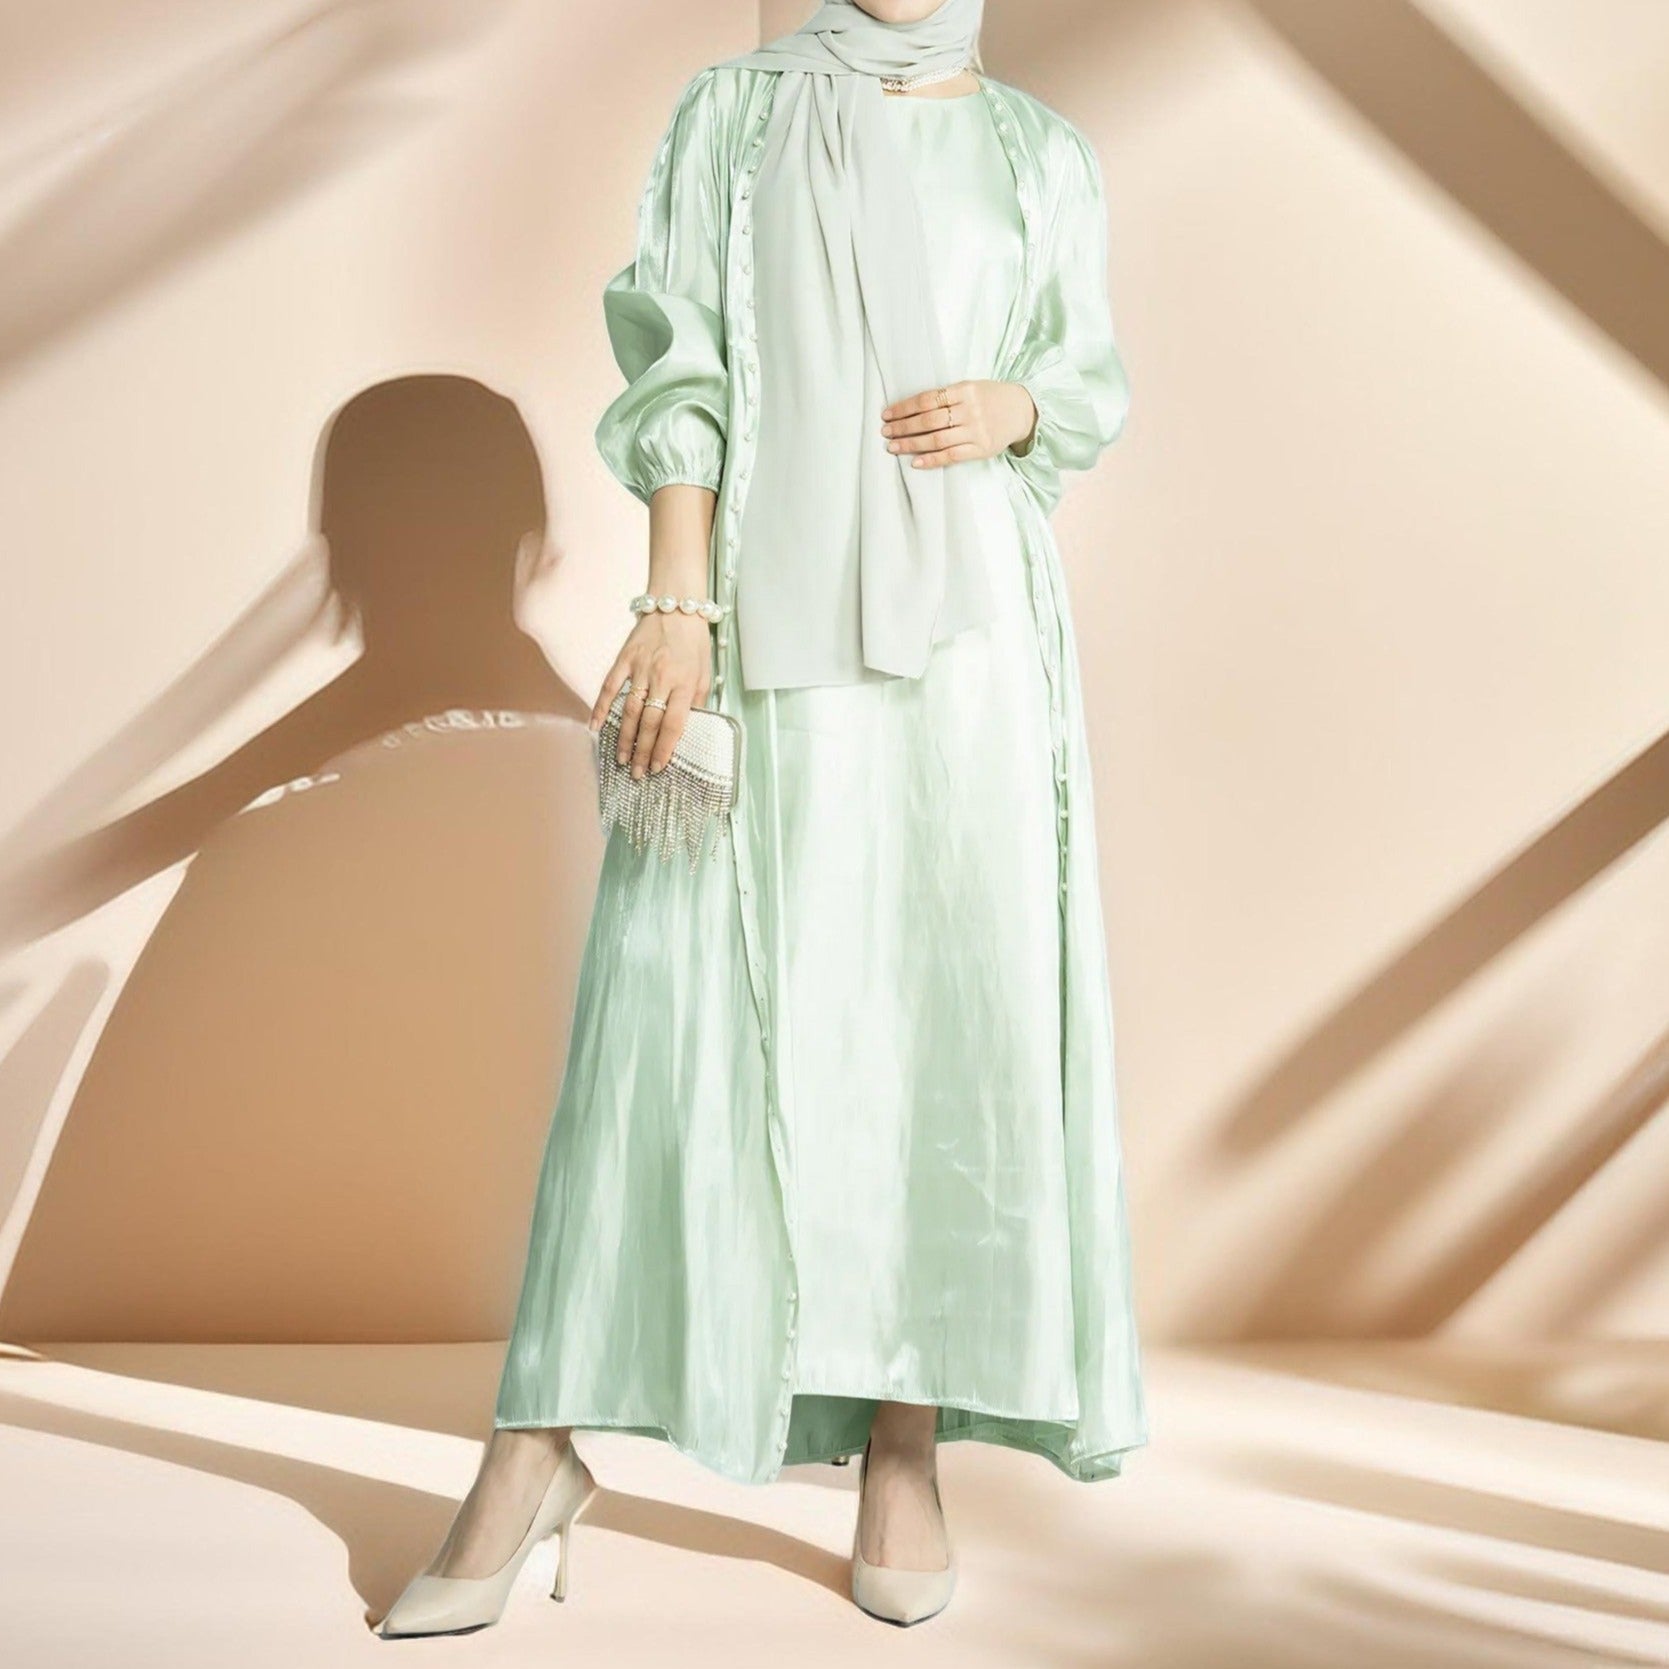 Luxury Elegant Women's Fashion Moroccan Abaya 2 Pcs set - Try Modest Limited 